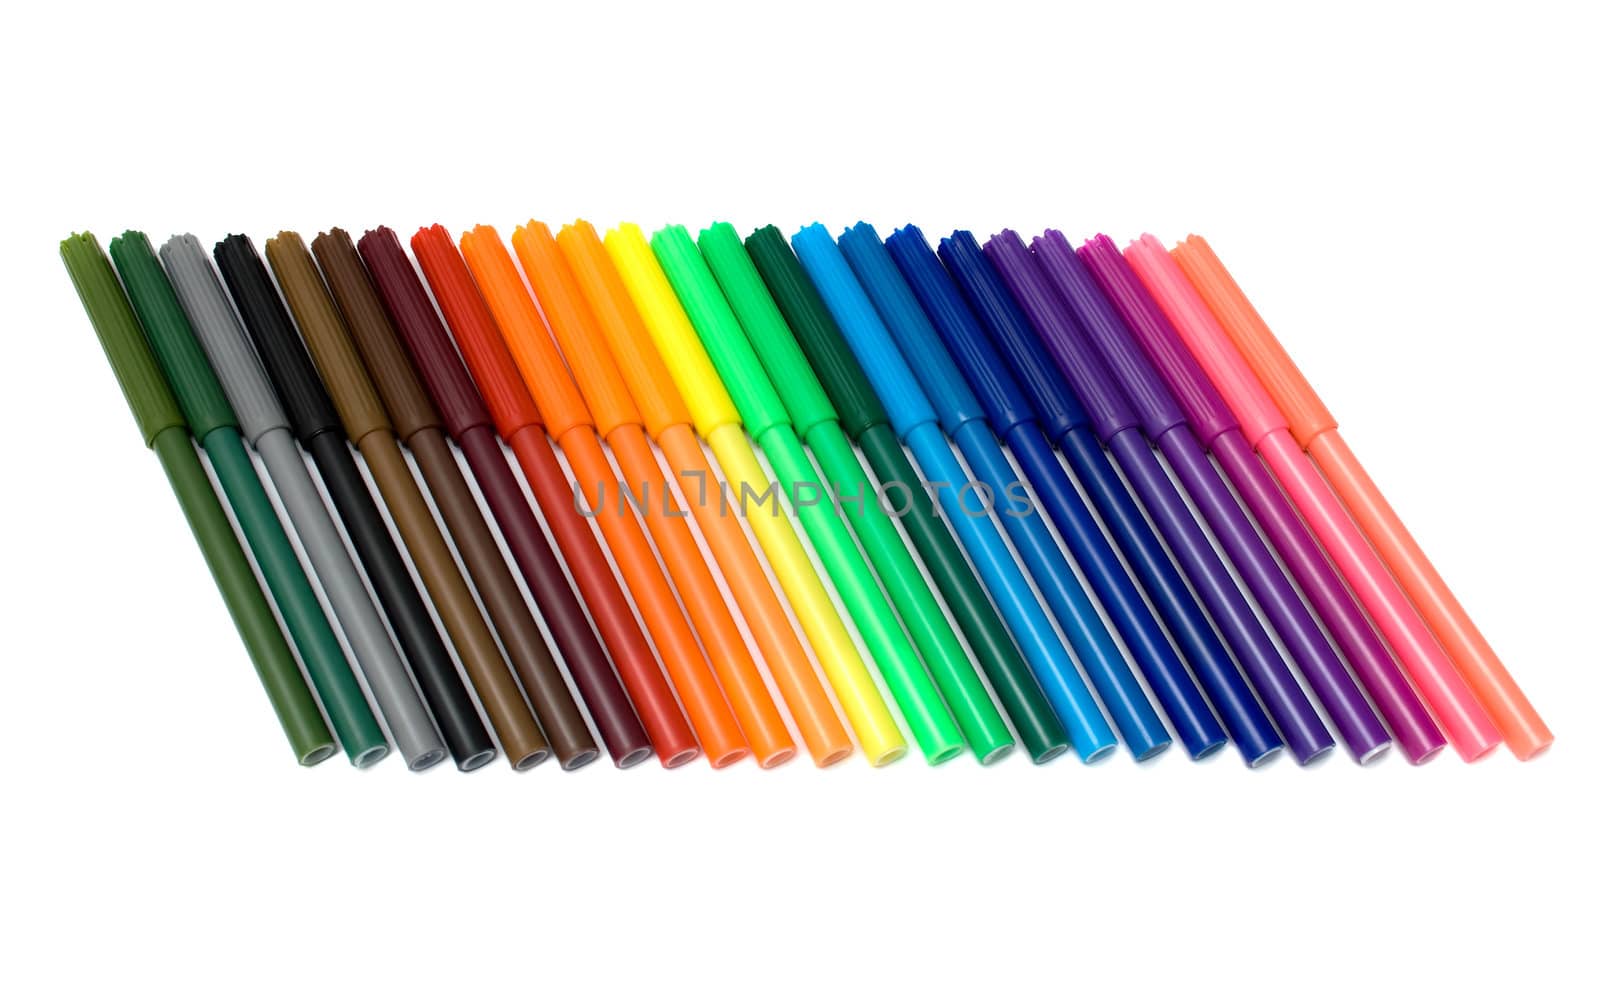 Colored felt tip pens by Nickondr